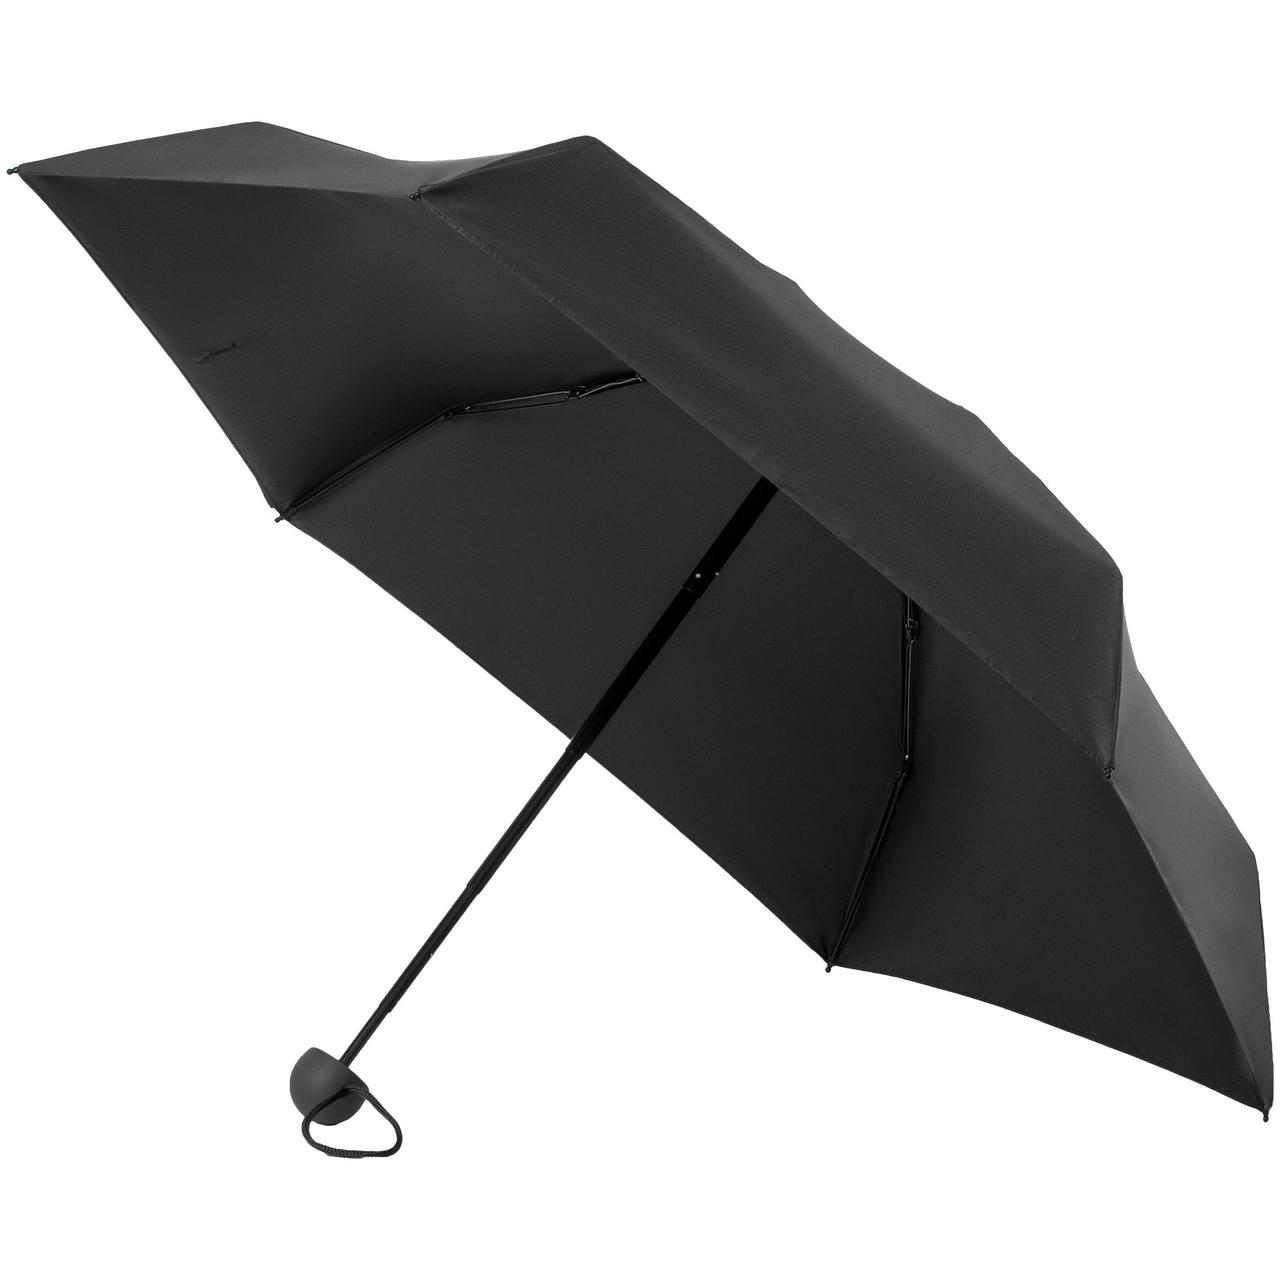 Складной зонт Cameo, механический, черный (артикул 12370.30)